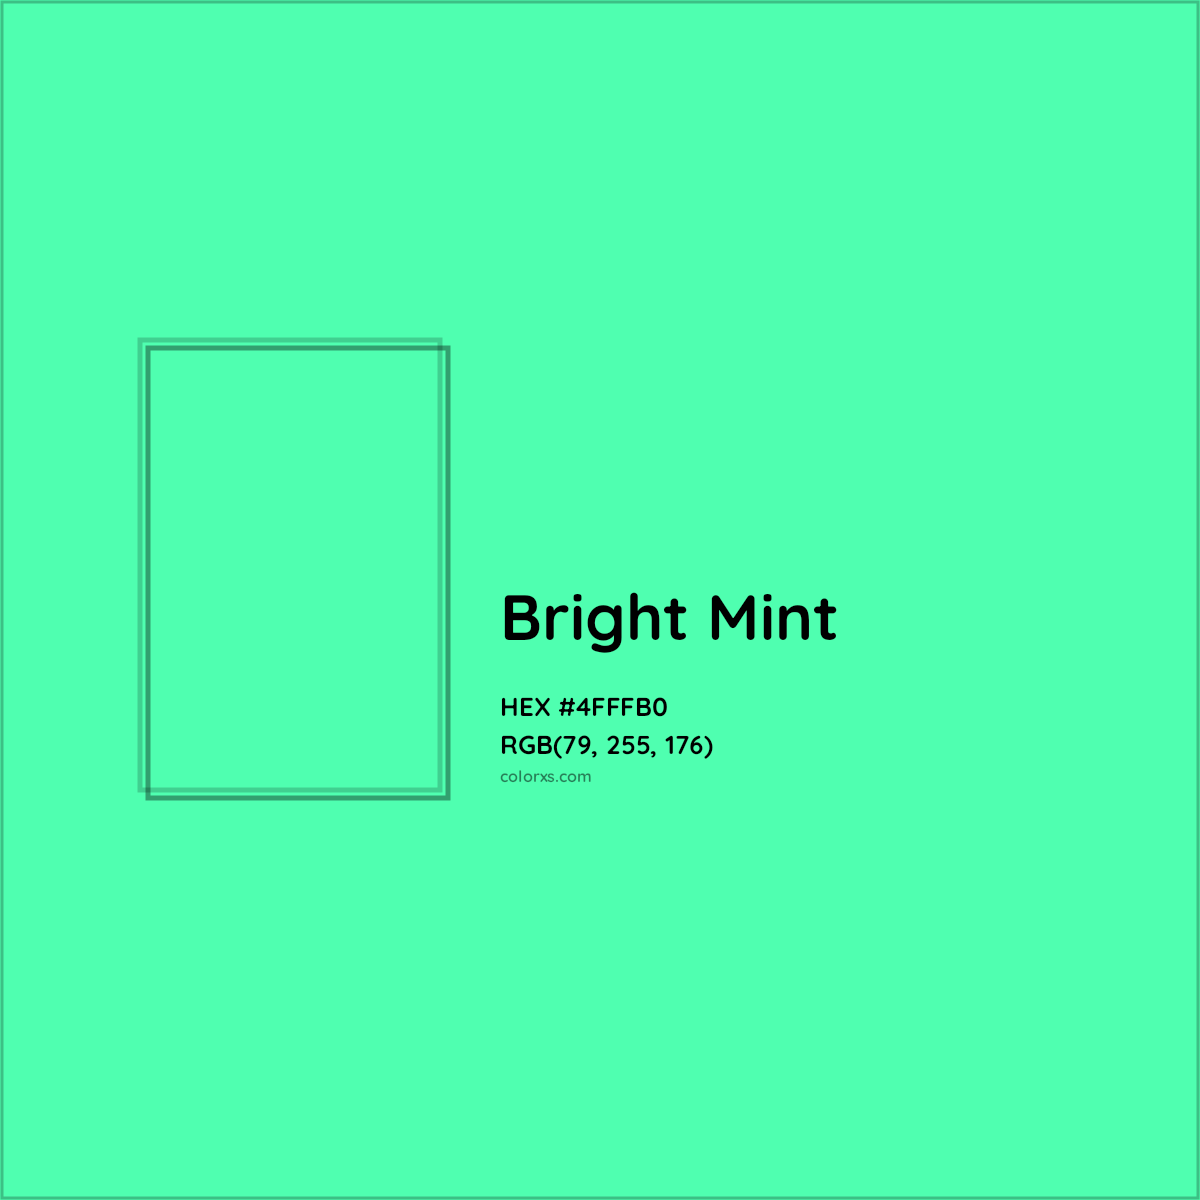 HEX #4FFFB0 Bright Mint Color - Color Code